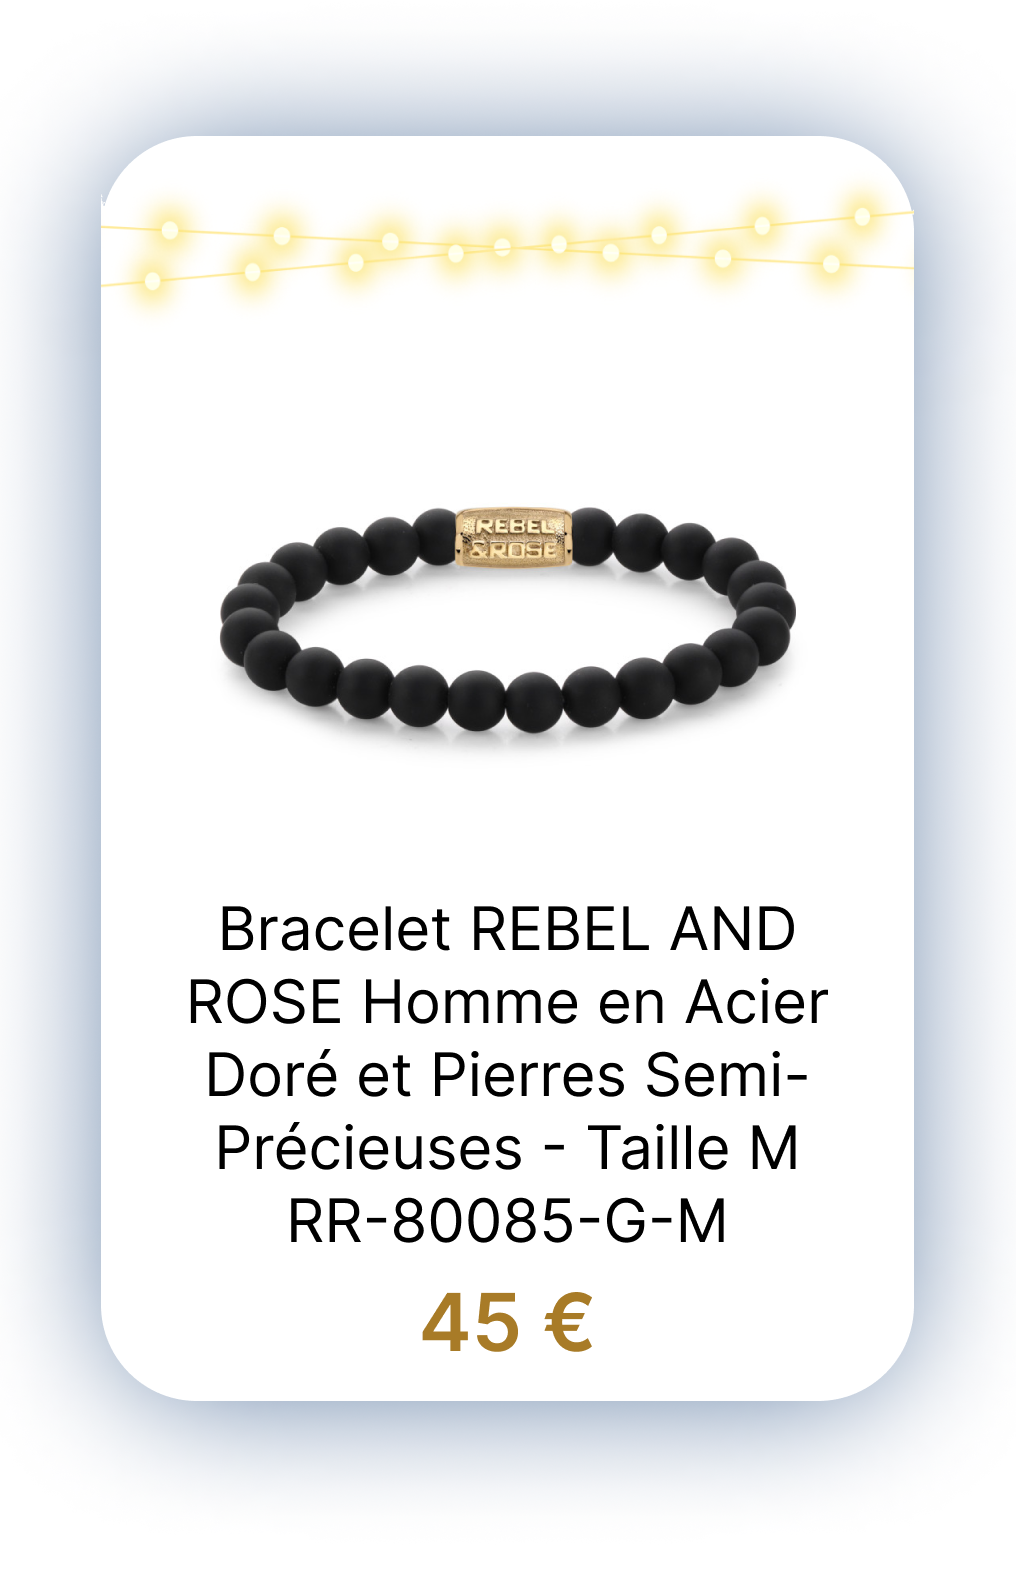 Bracelet REBEL AND ROSE Homme en Acier Doré et Pierres Semi-Précieuses - Taille M - RR-80085-G-M.png